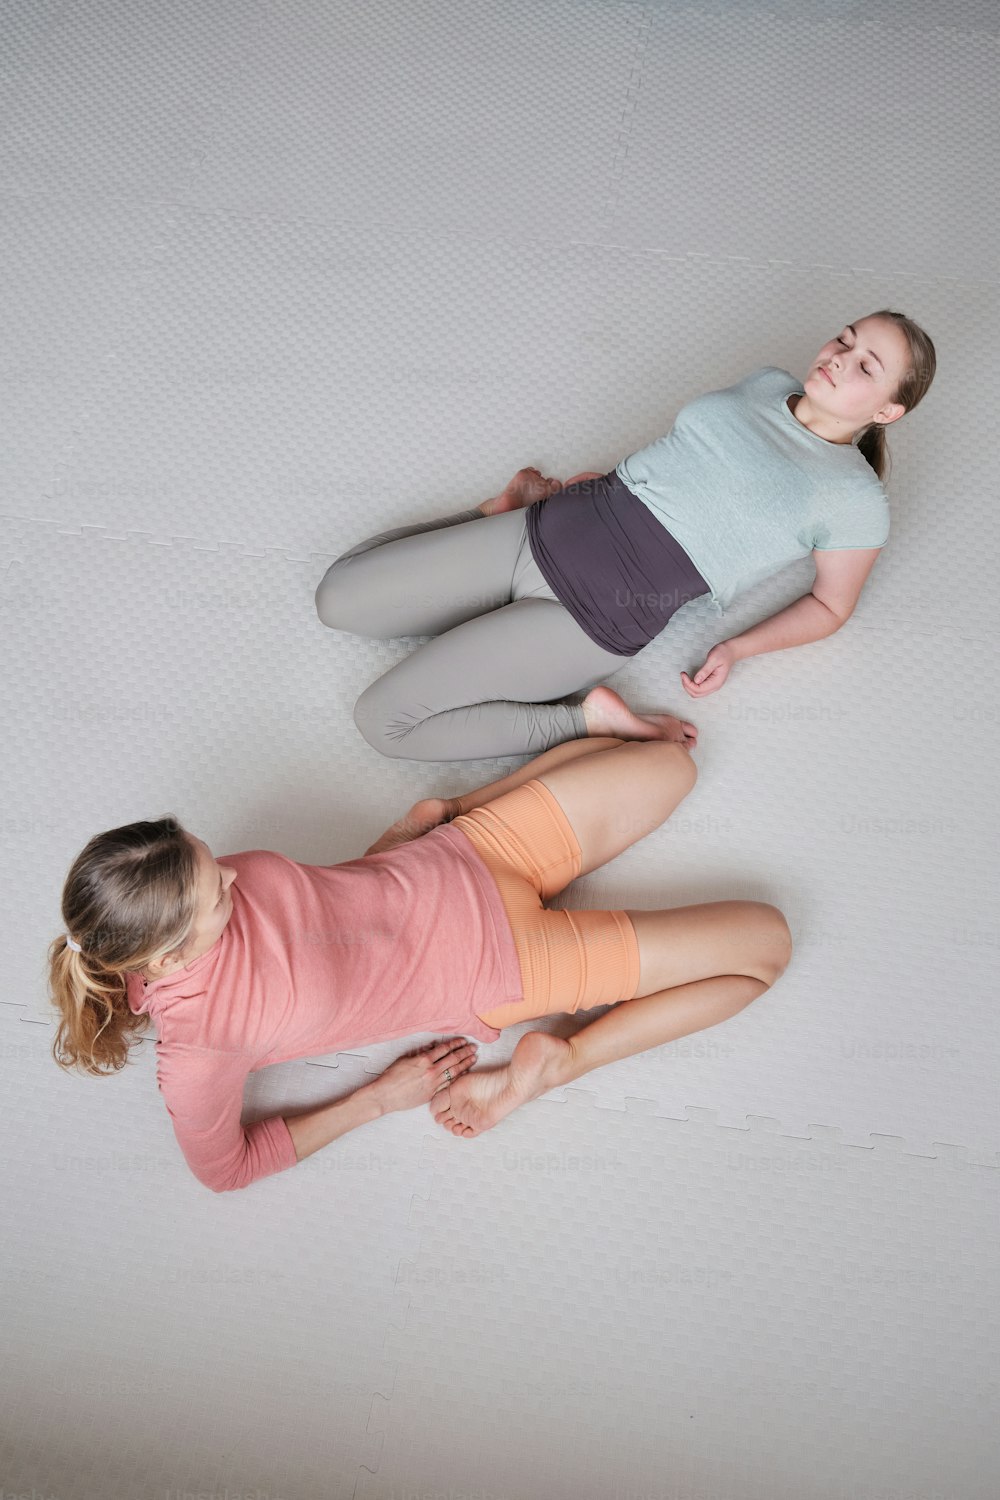 Deux jeunes filles allongées ensemble sur un matelas